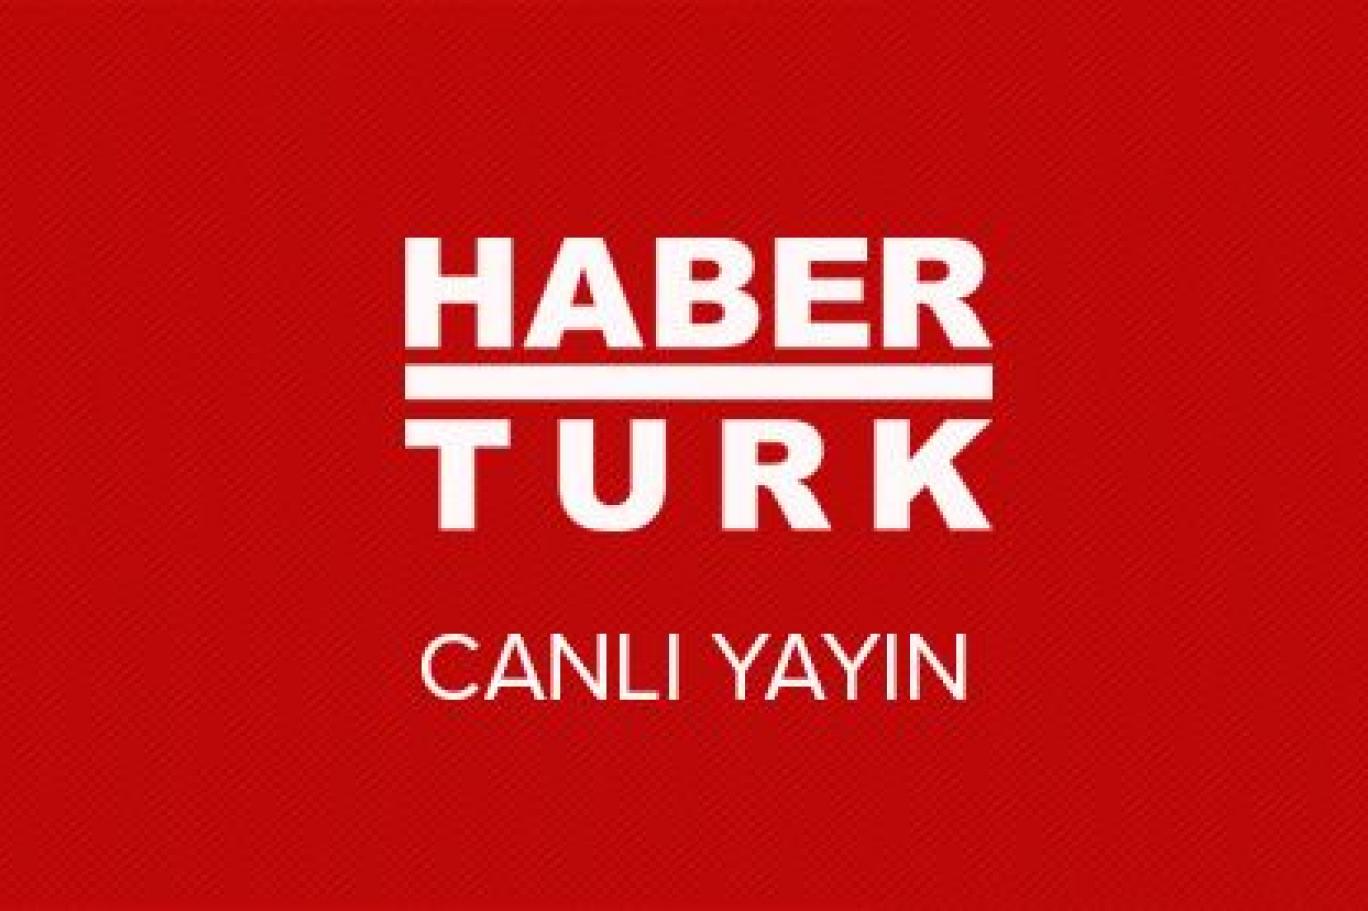 haberturk tv de ankara temsilcisi aydemir gorevden alindi genel yayin yonetmeni oguz istifa etti independent turkce